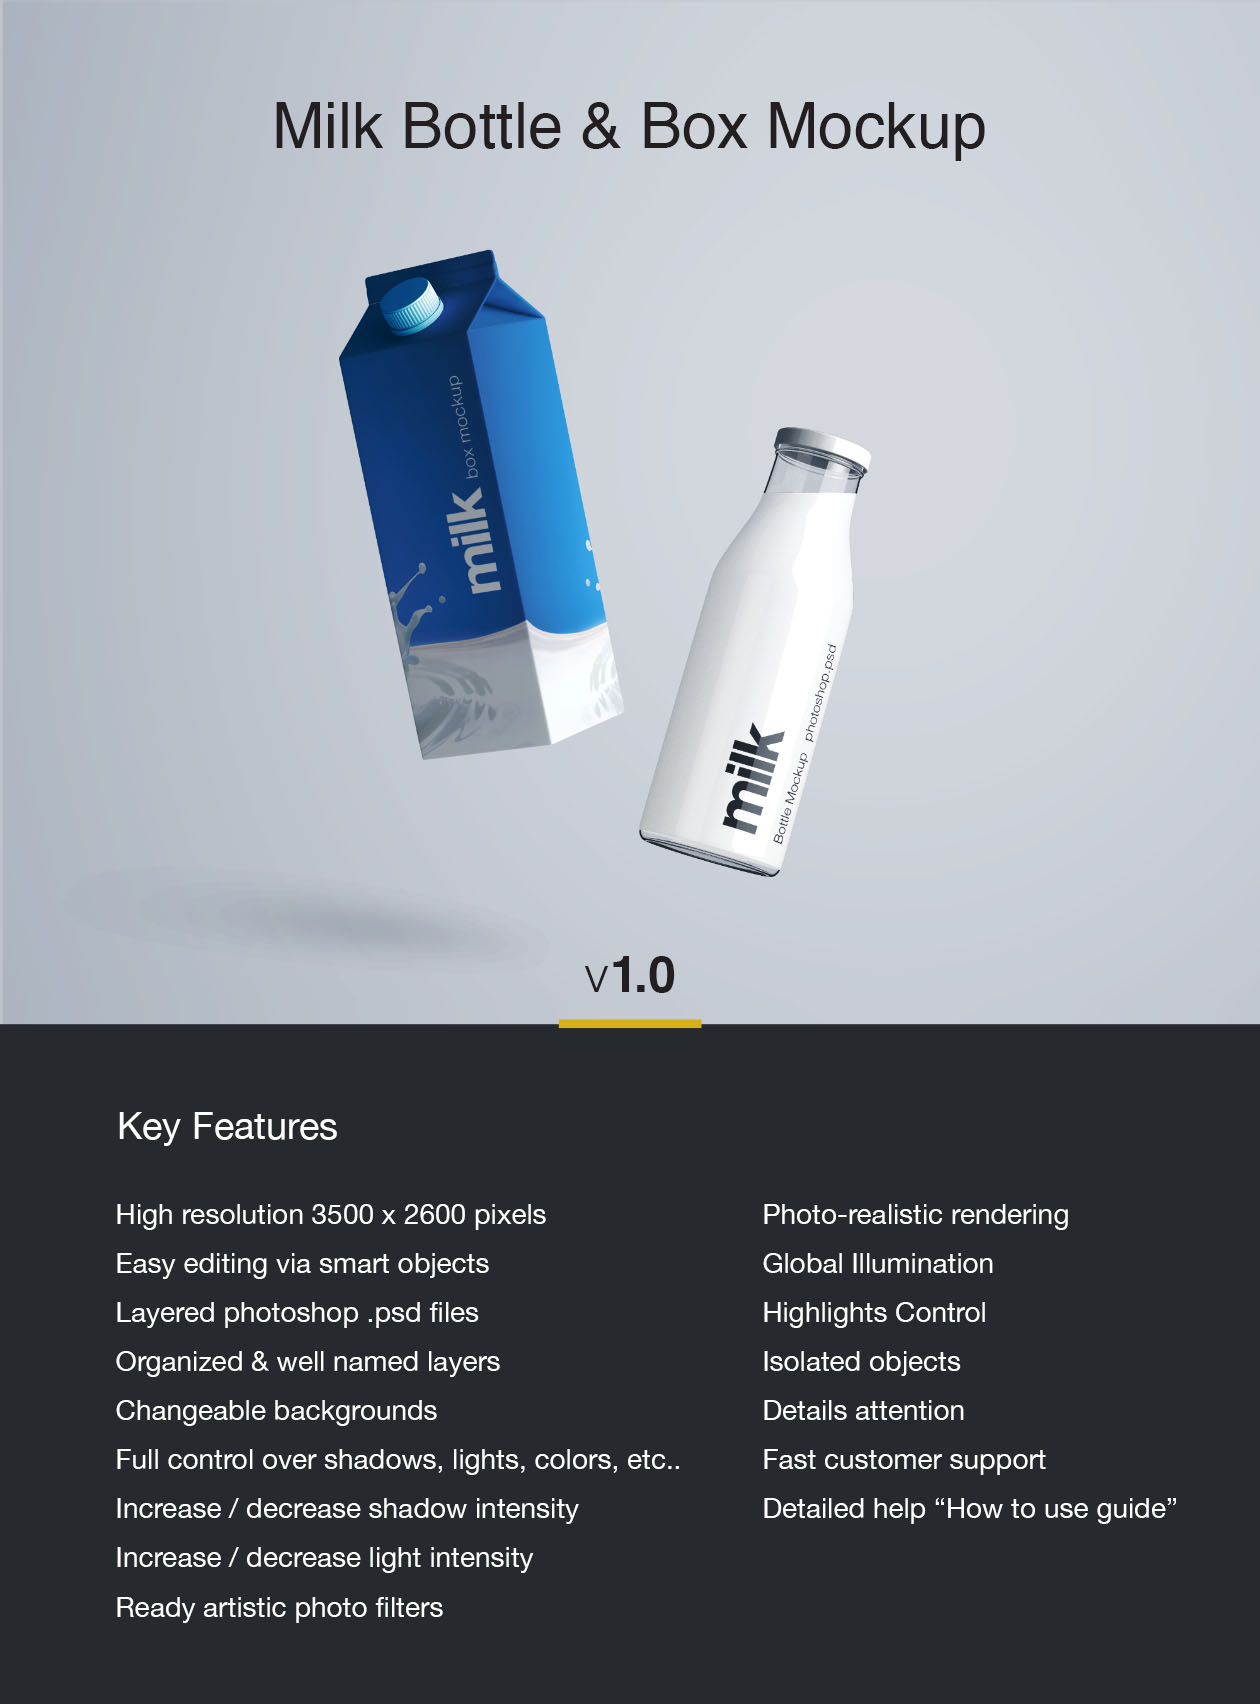 牛奶盒&牛奶瓶外观设计PSD样机模板 Milk Bottle Mockup – PSD插图